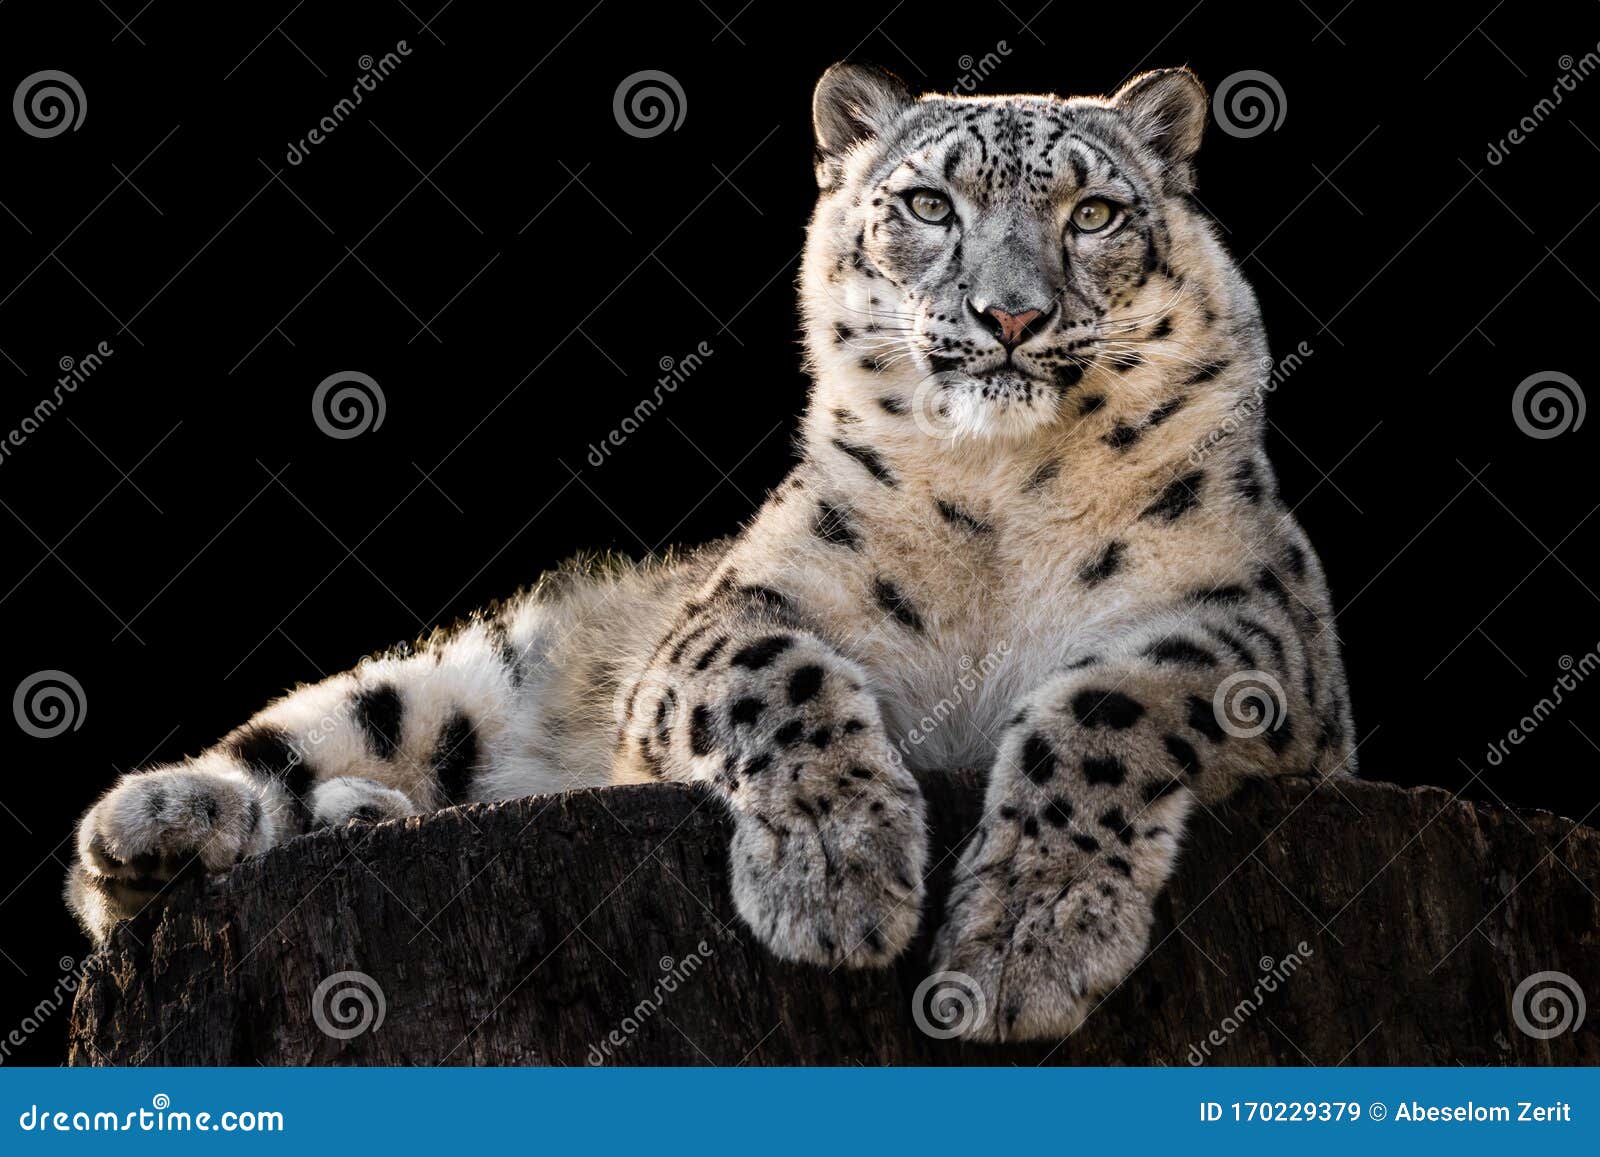 sunbathing snow leopard iii